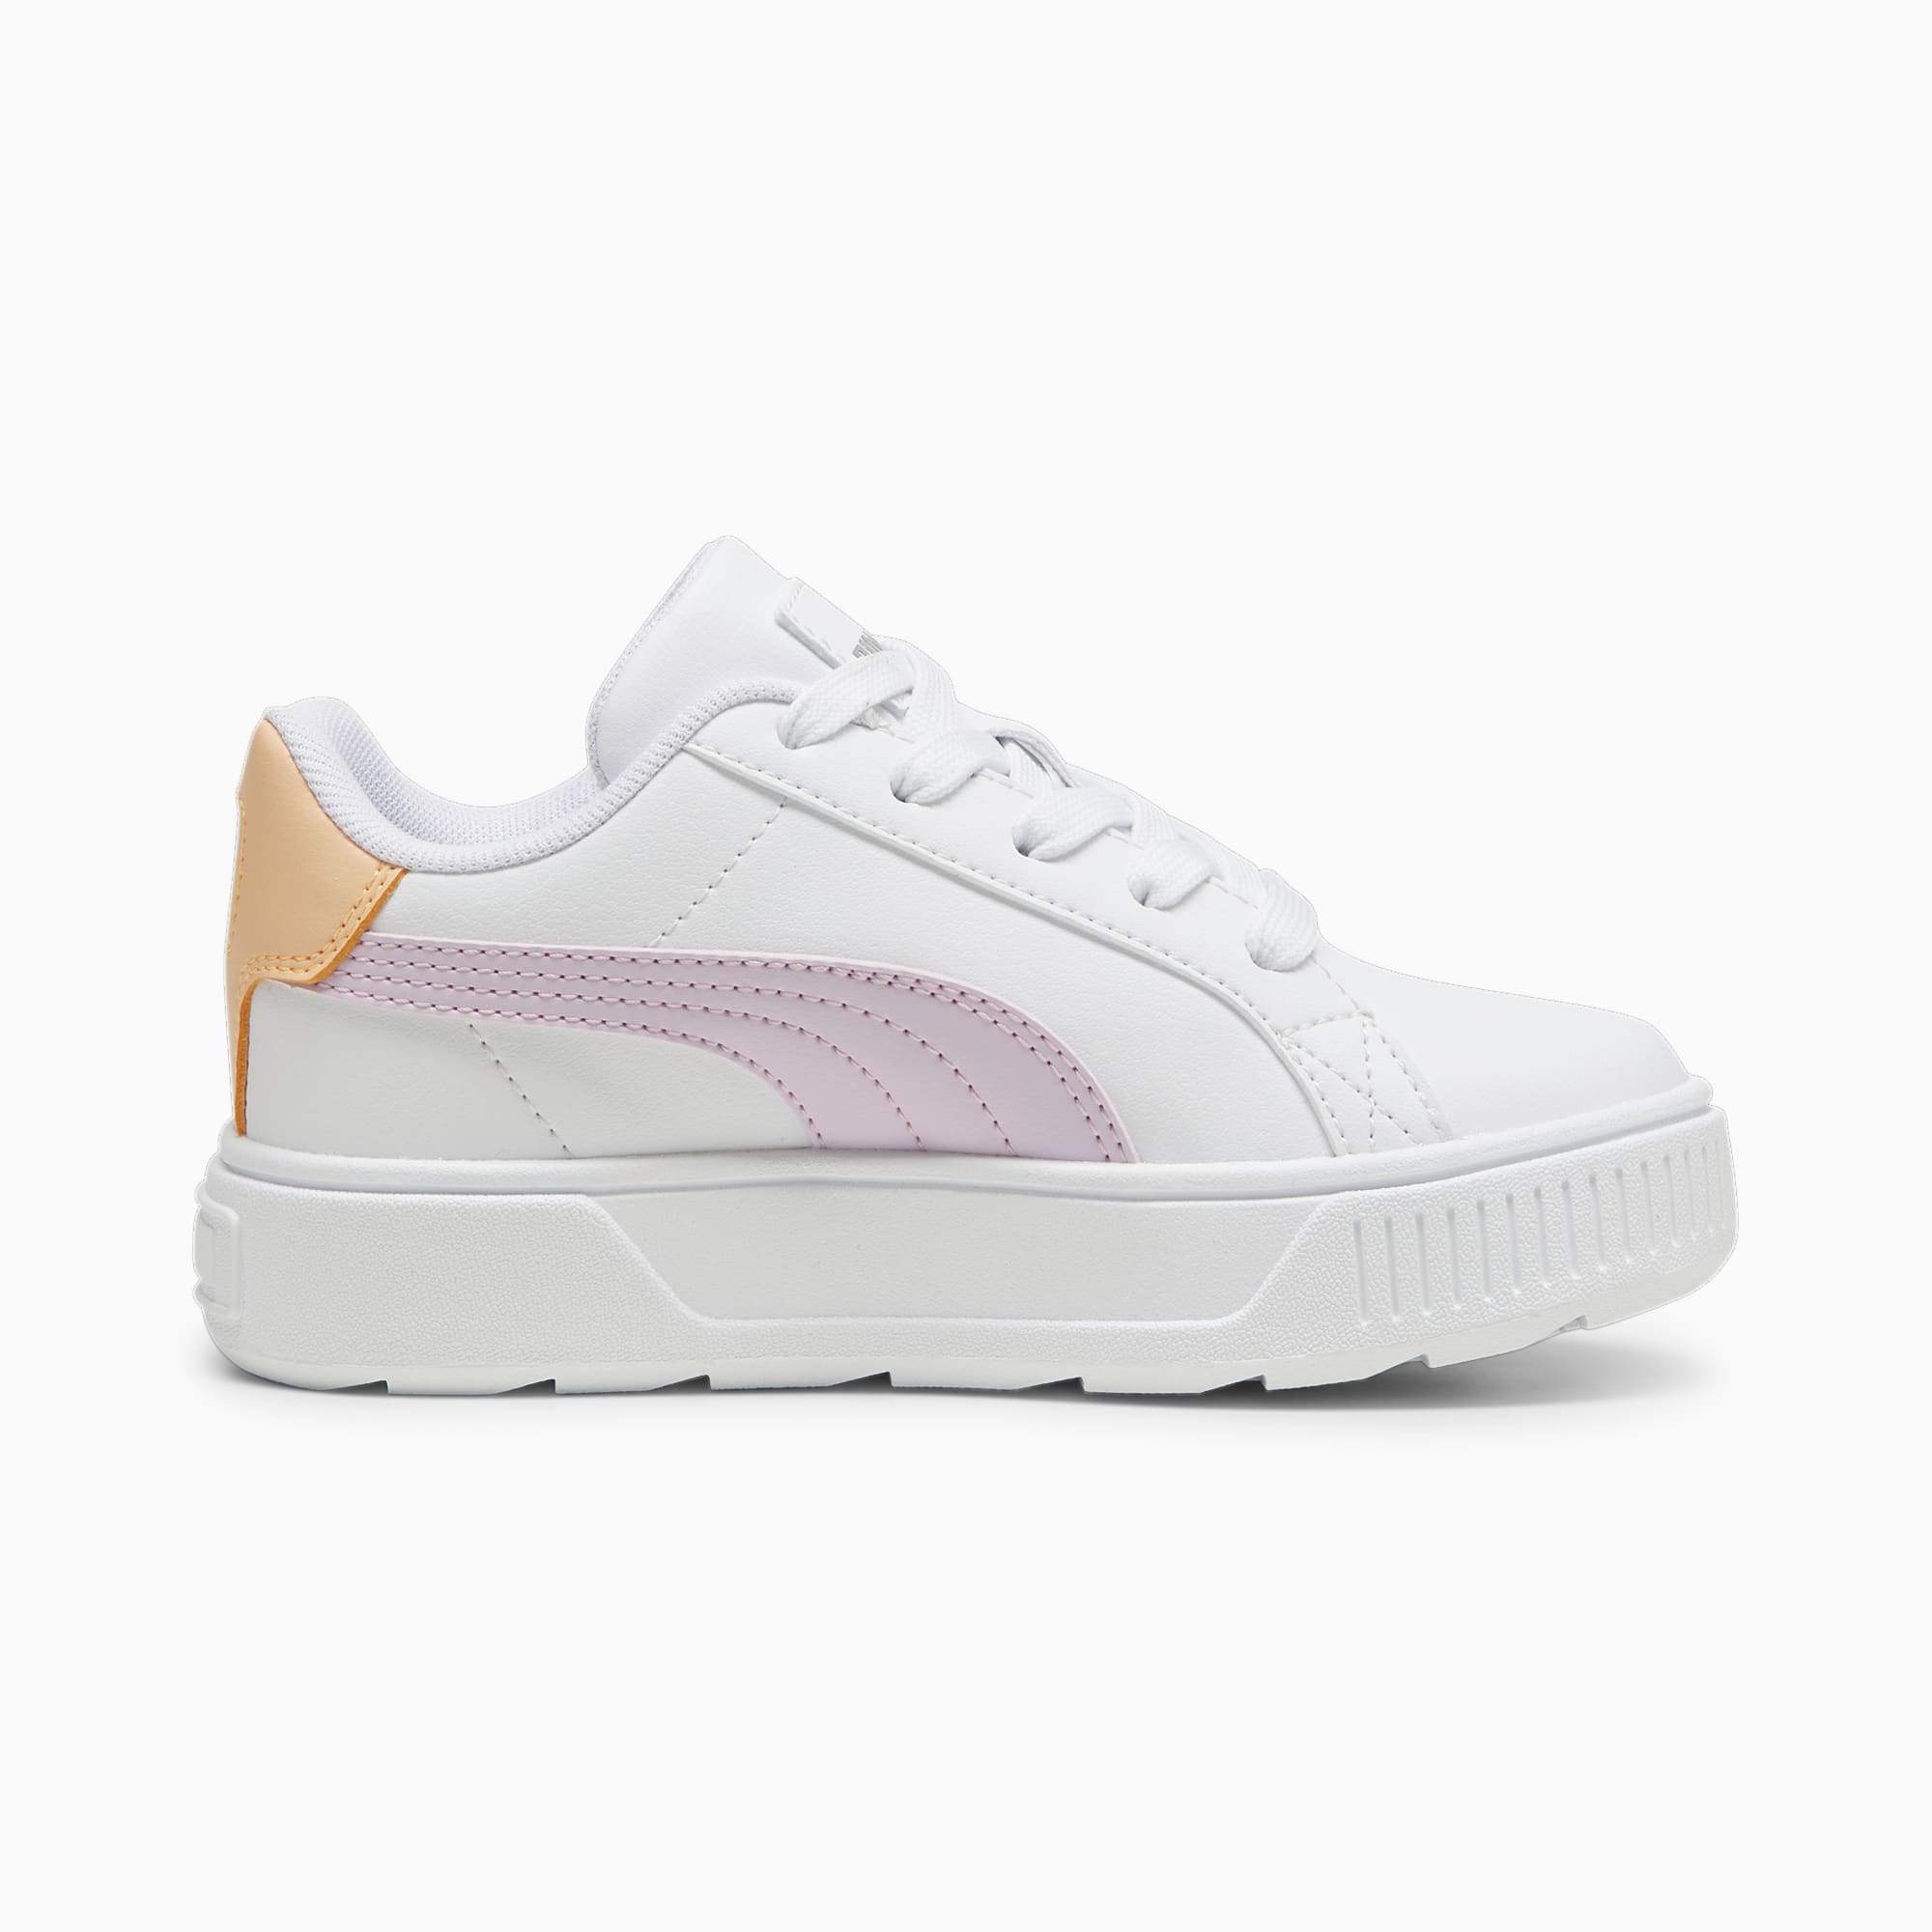 PUMA Karmen L Sneakers Kids, White/Grape Mist/Silver, Size 29, Shoes